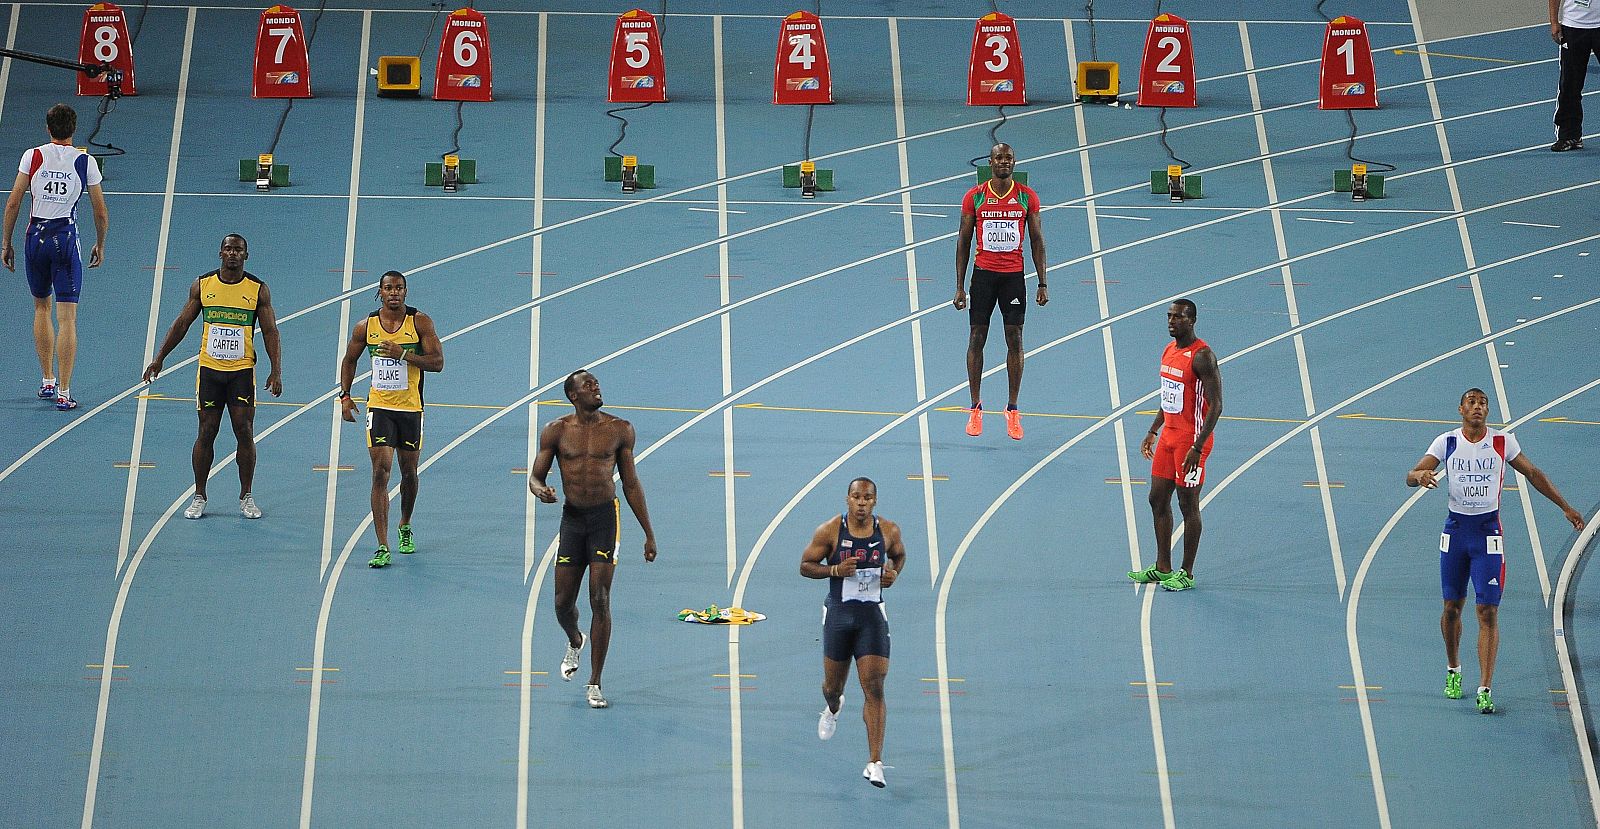 Bolt, en el centro sin camiseta, tras ser descalificado de la final